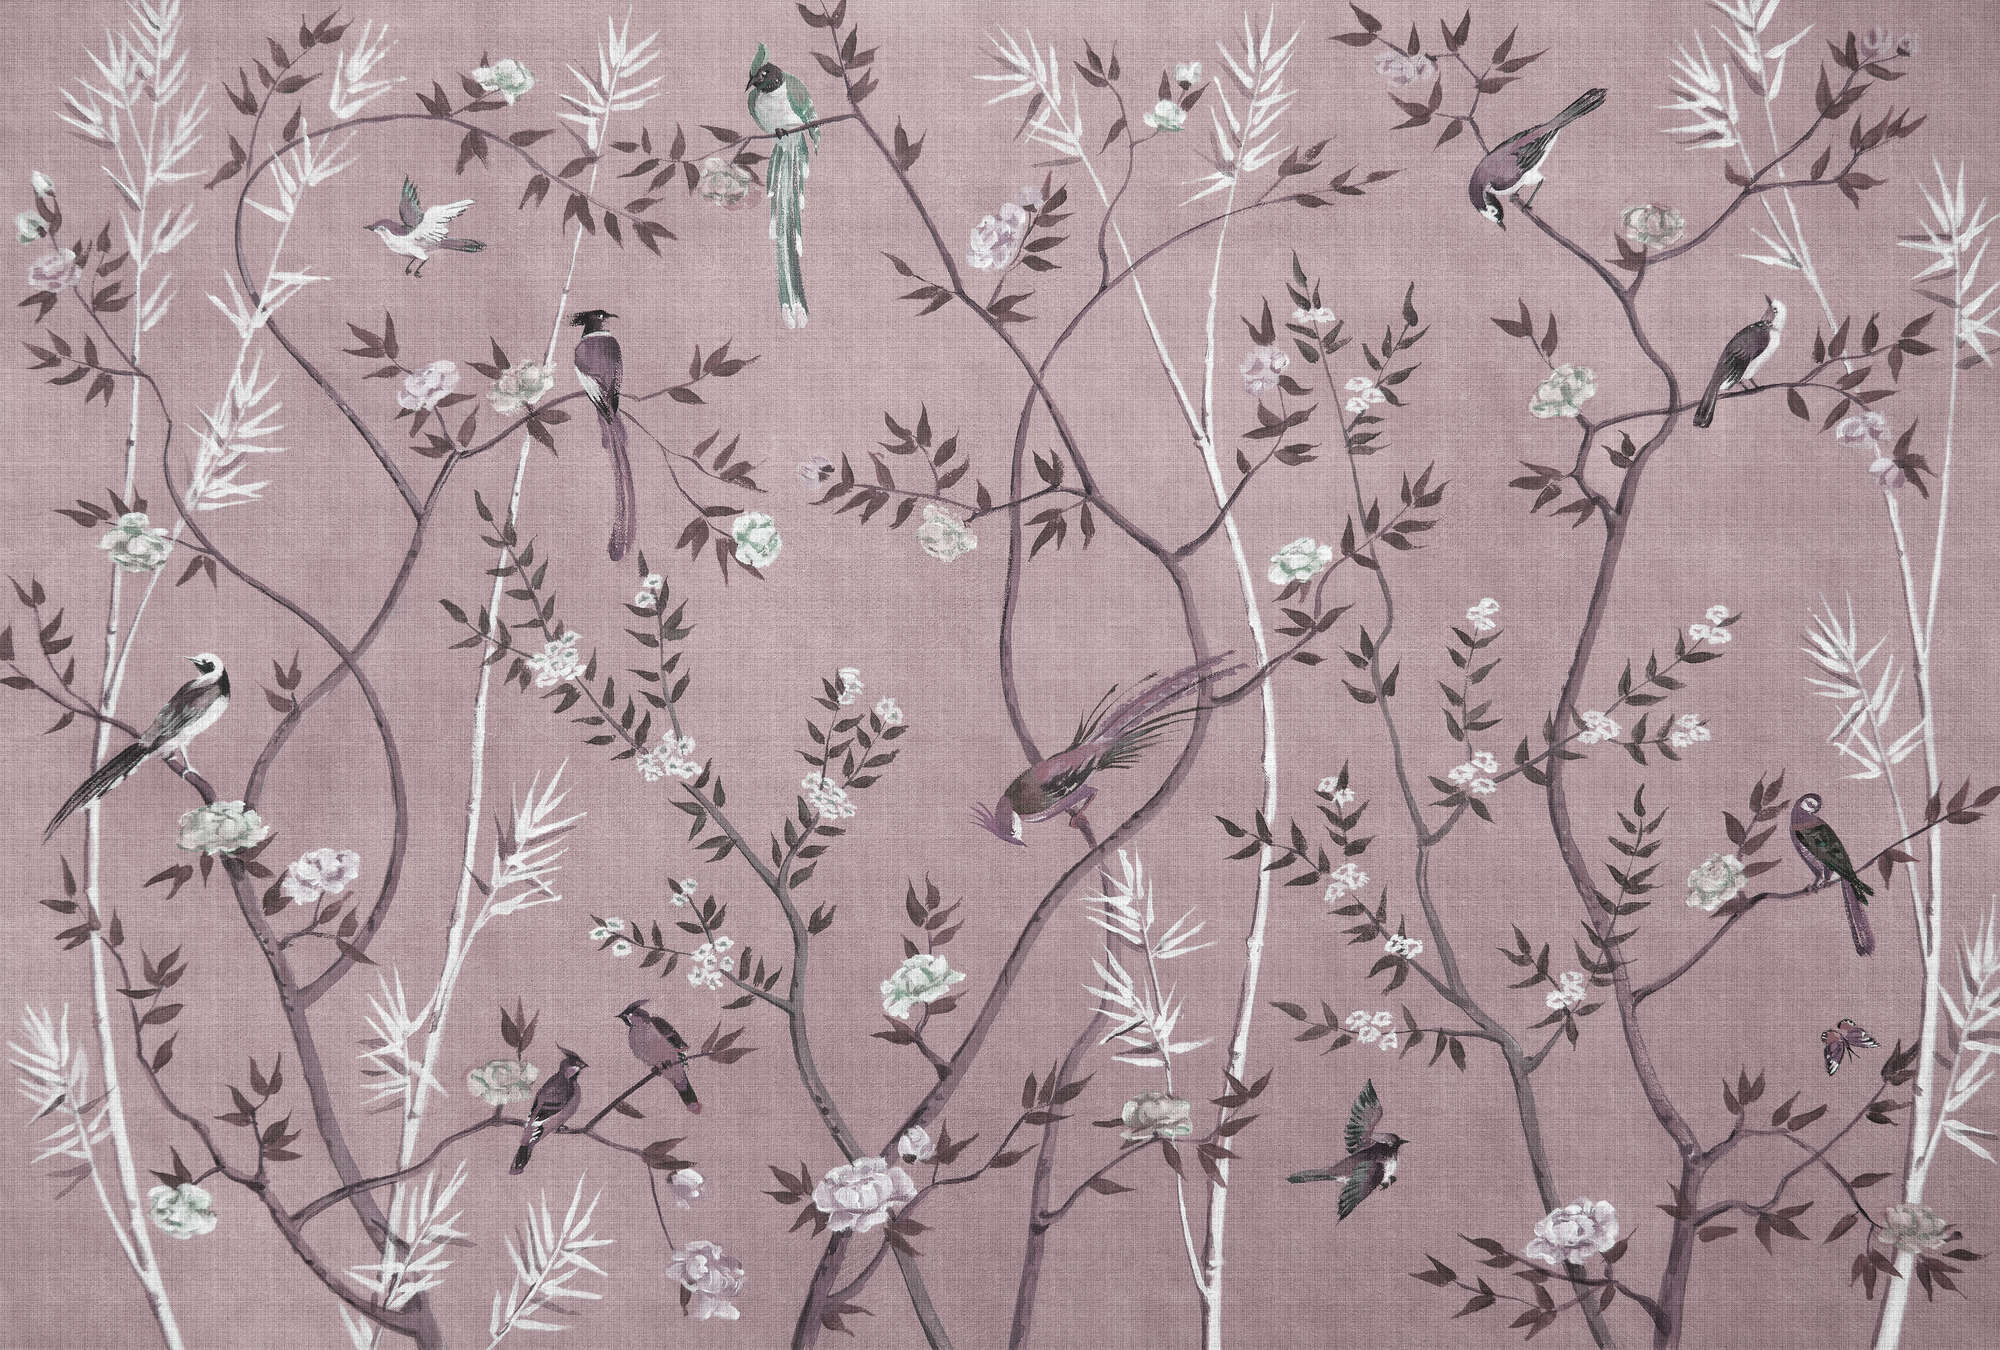             Theekamer 3 - Muurschildering vogels & bloemen ontwerp in roze & wit
        